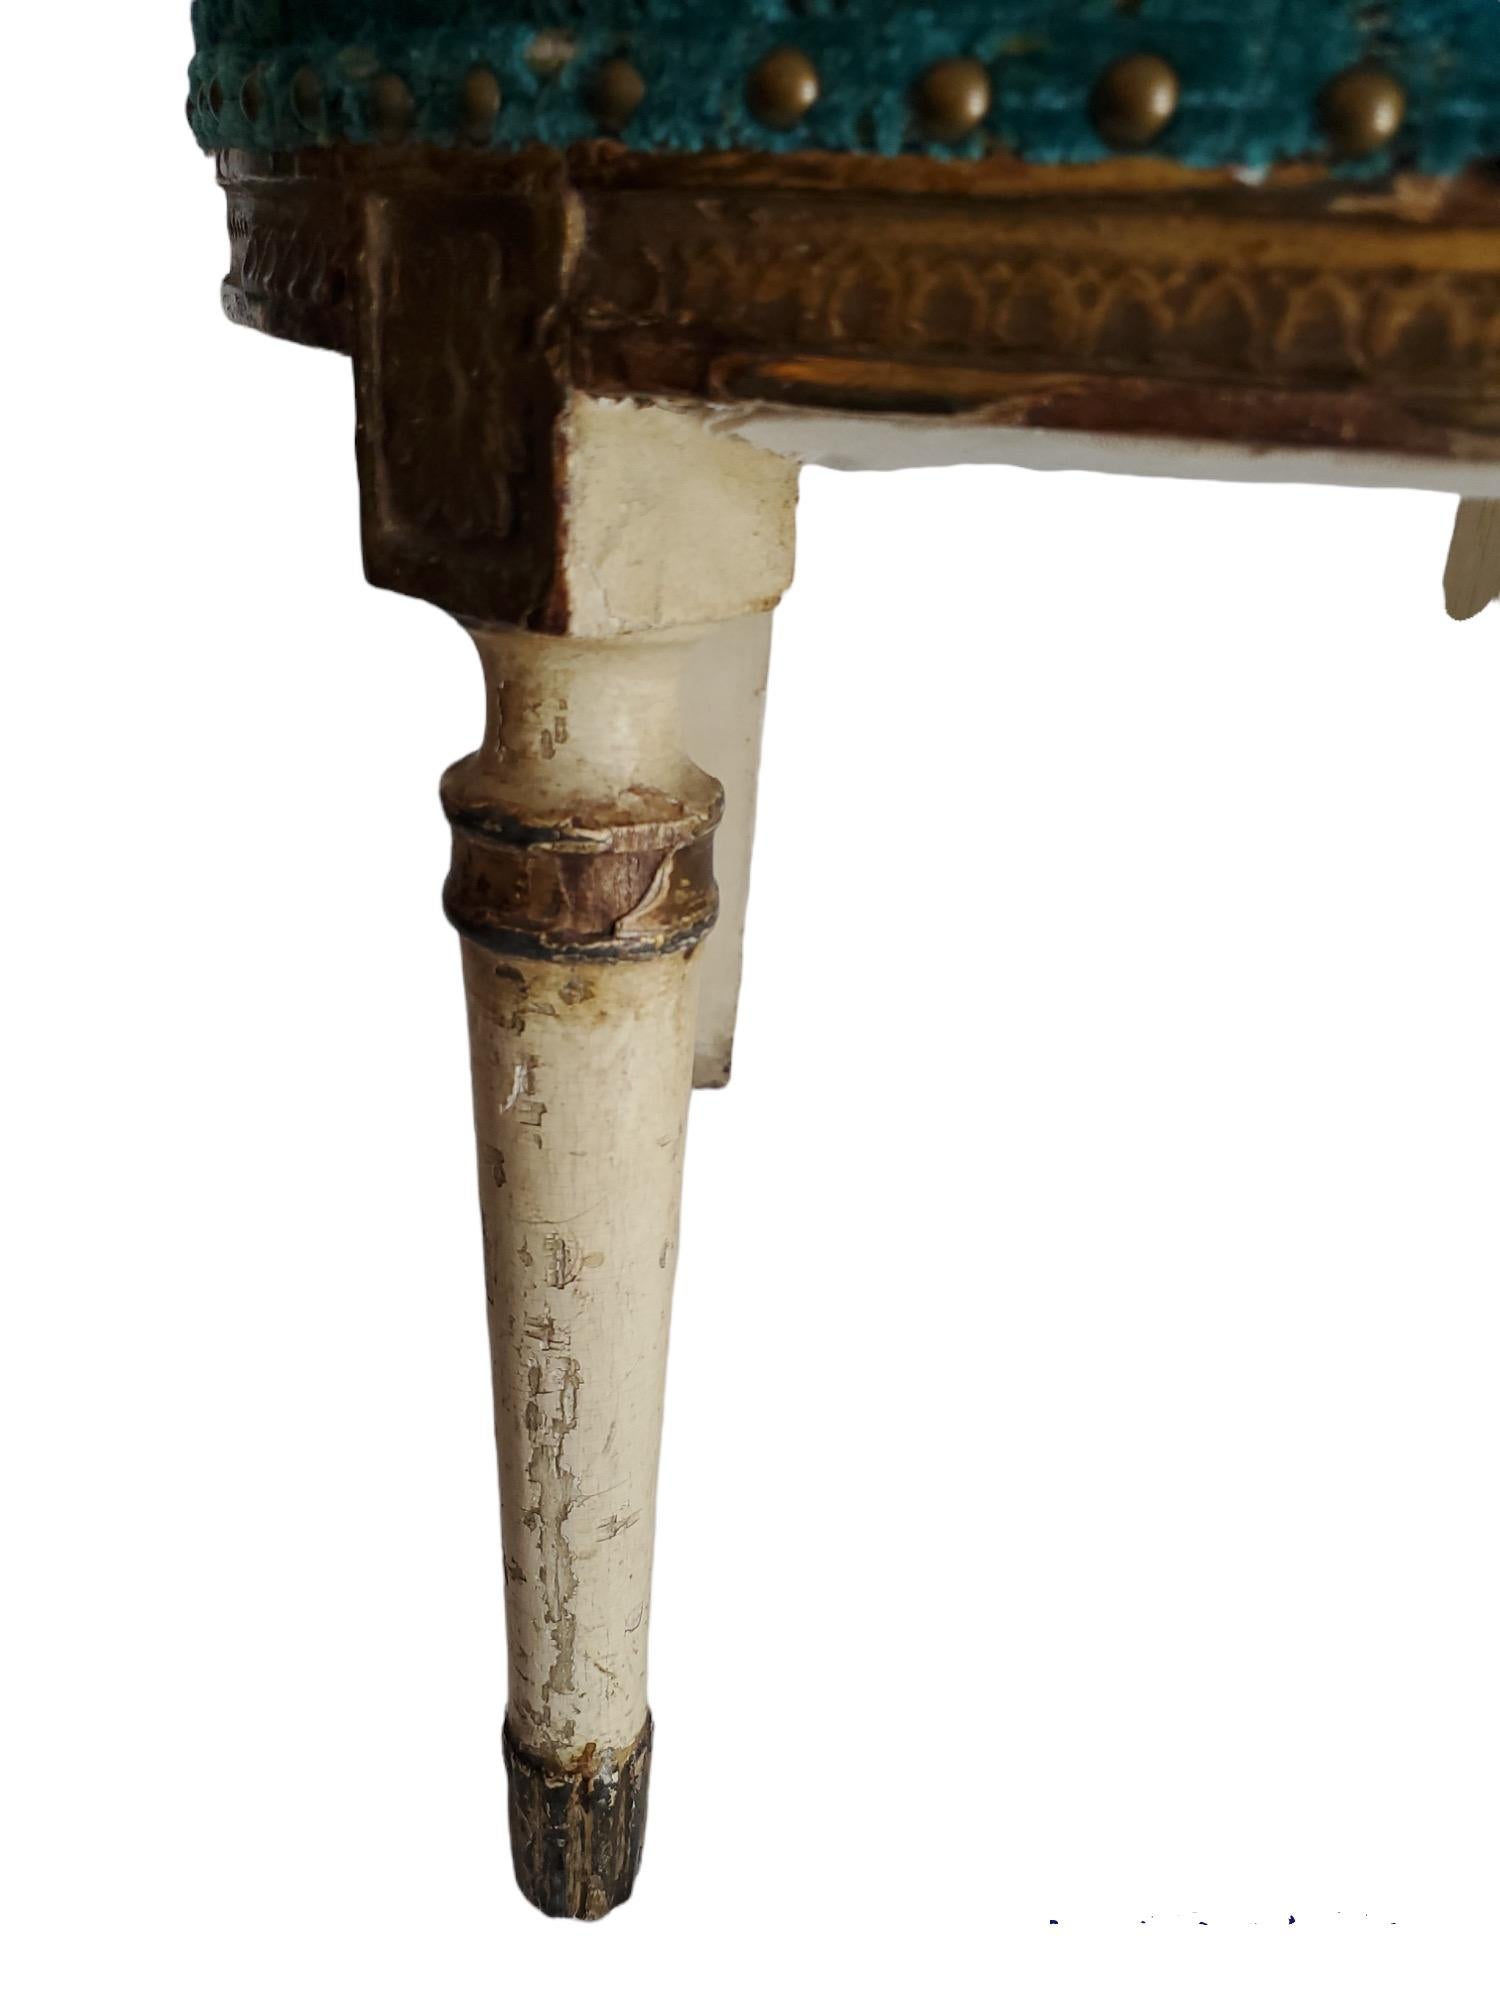 Chaises basses italiennes peintes du début du XIXe siècle.  Nouvellement tapissé en velours aqua.  Motif de guirlande de fleurs et d'urne.